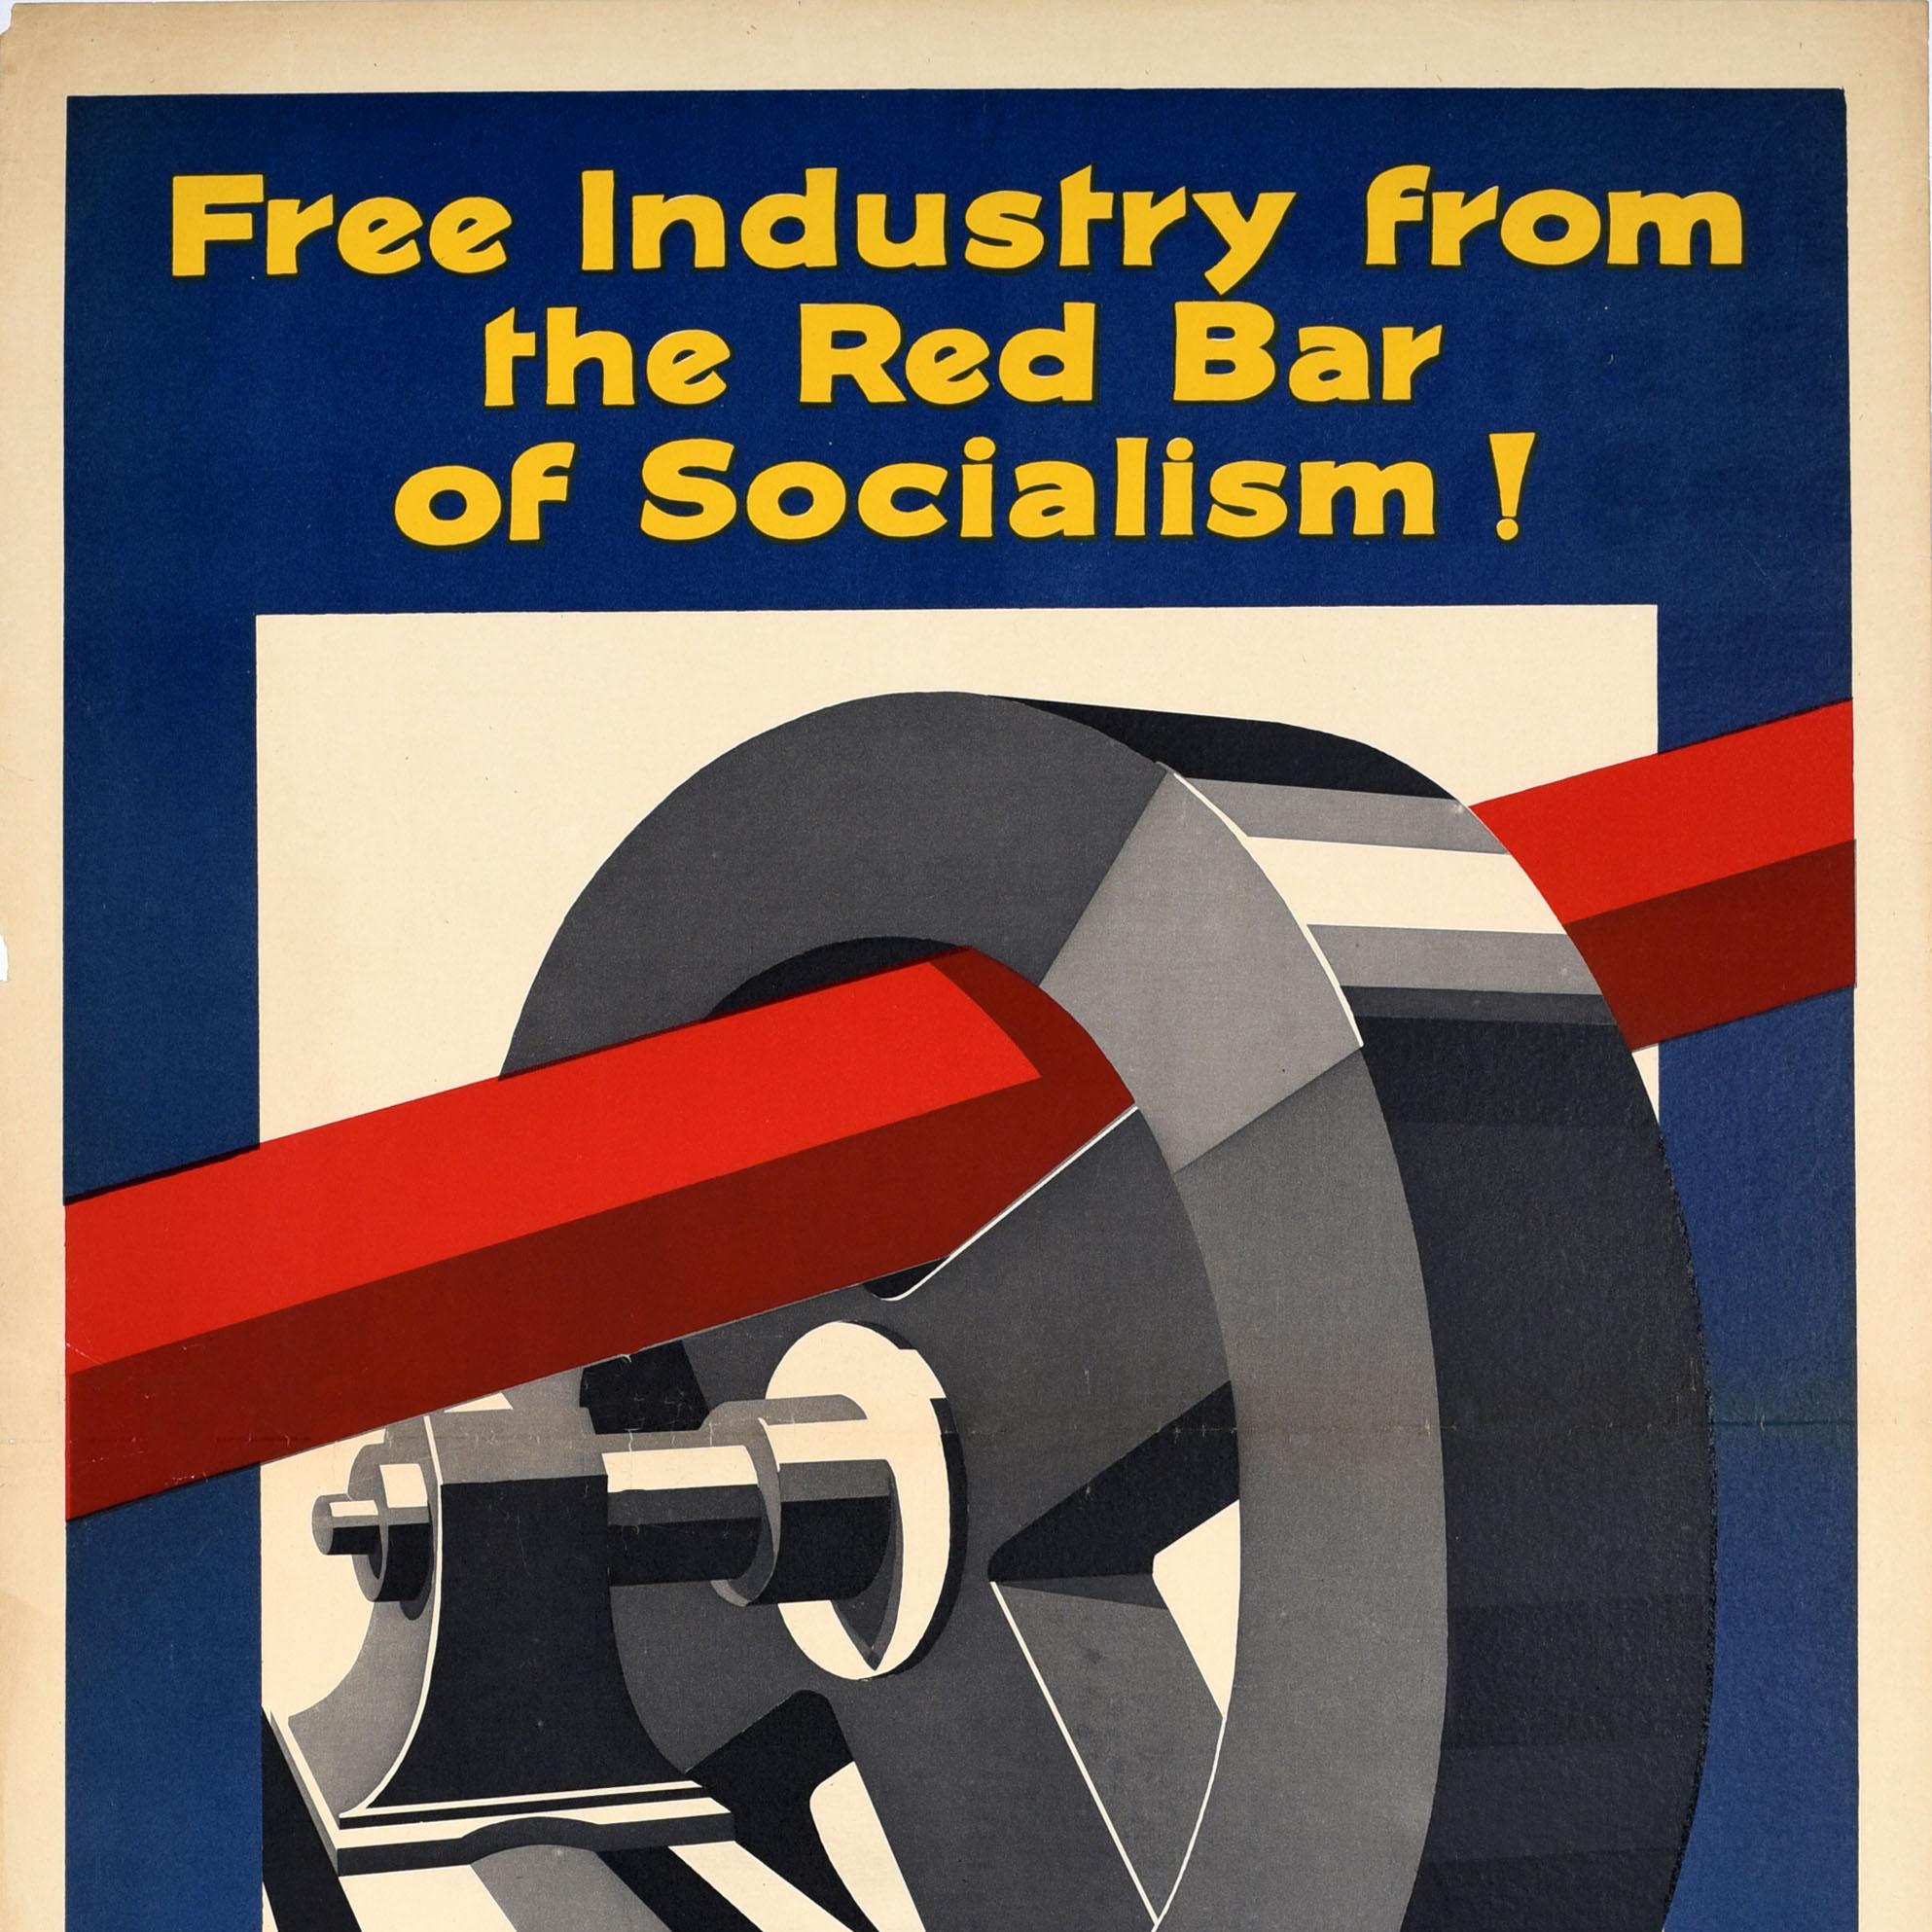 Original antikes politisches Wahlplakat - Befreie die Industrie vom roten Balken des Sozialismus! Wählt Unionisten! - mit einem dynamischen Design, das einen roten Balken zeigt, der in ein industrielles Metallzahnrad eingeklemmt ist, um es am Laufen